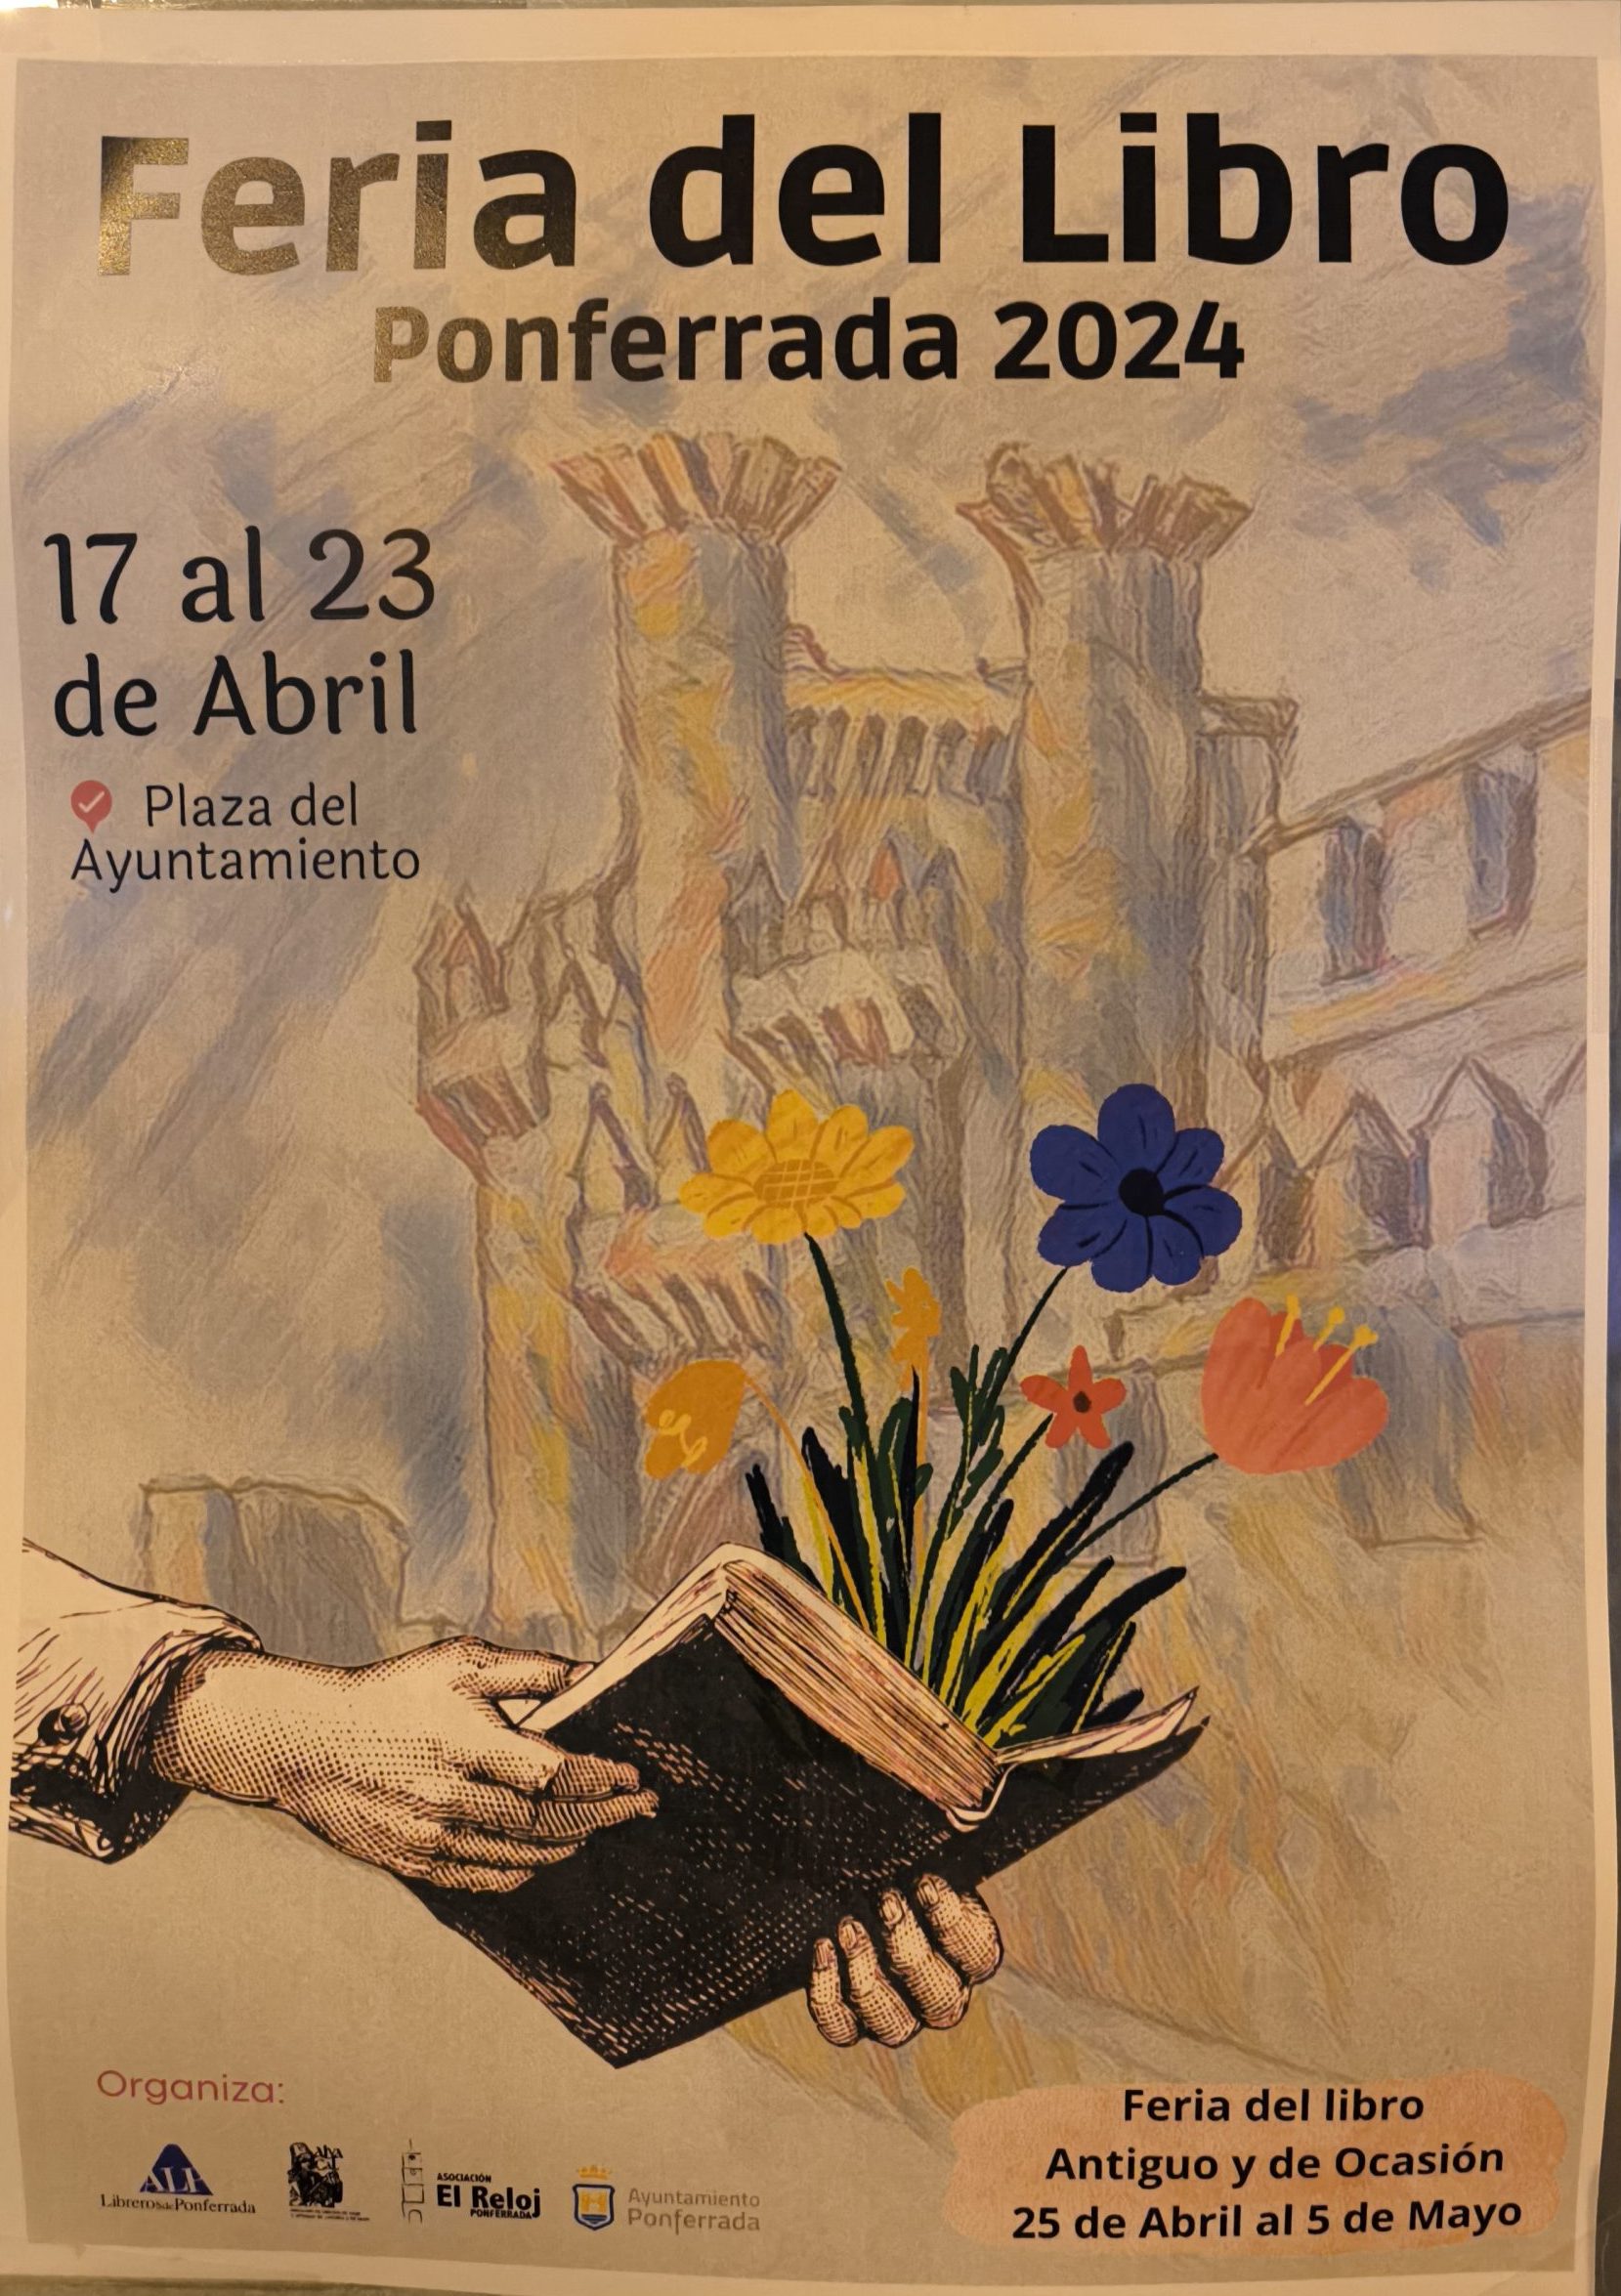 La Feria del Libro de Ponferrada se celebrará del 17 al 23 de abril en la Plaza del Ayuntamiento 11